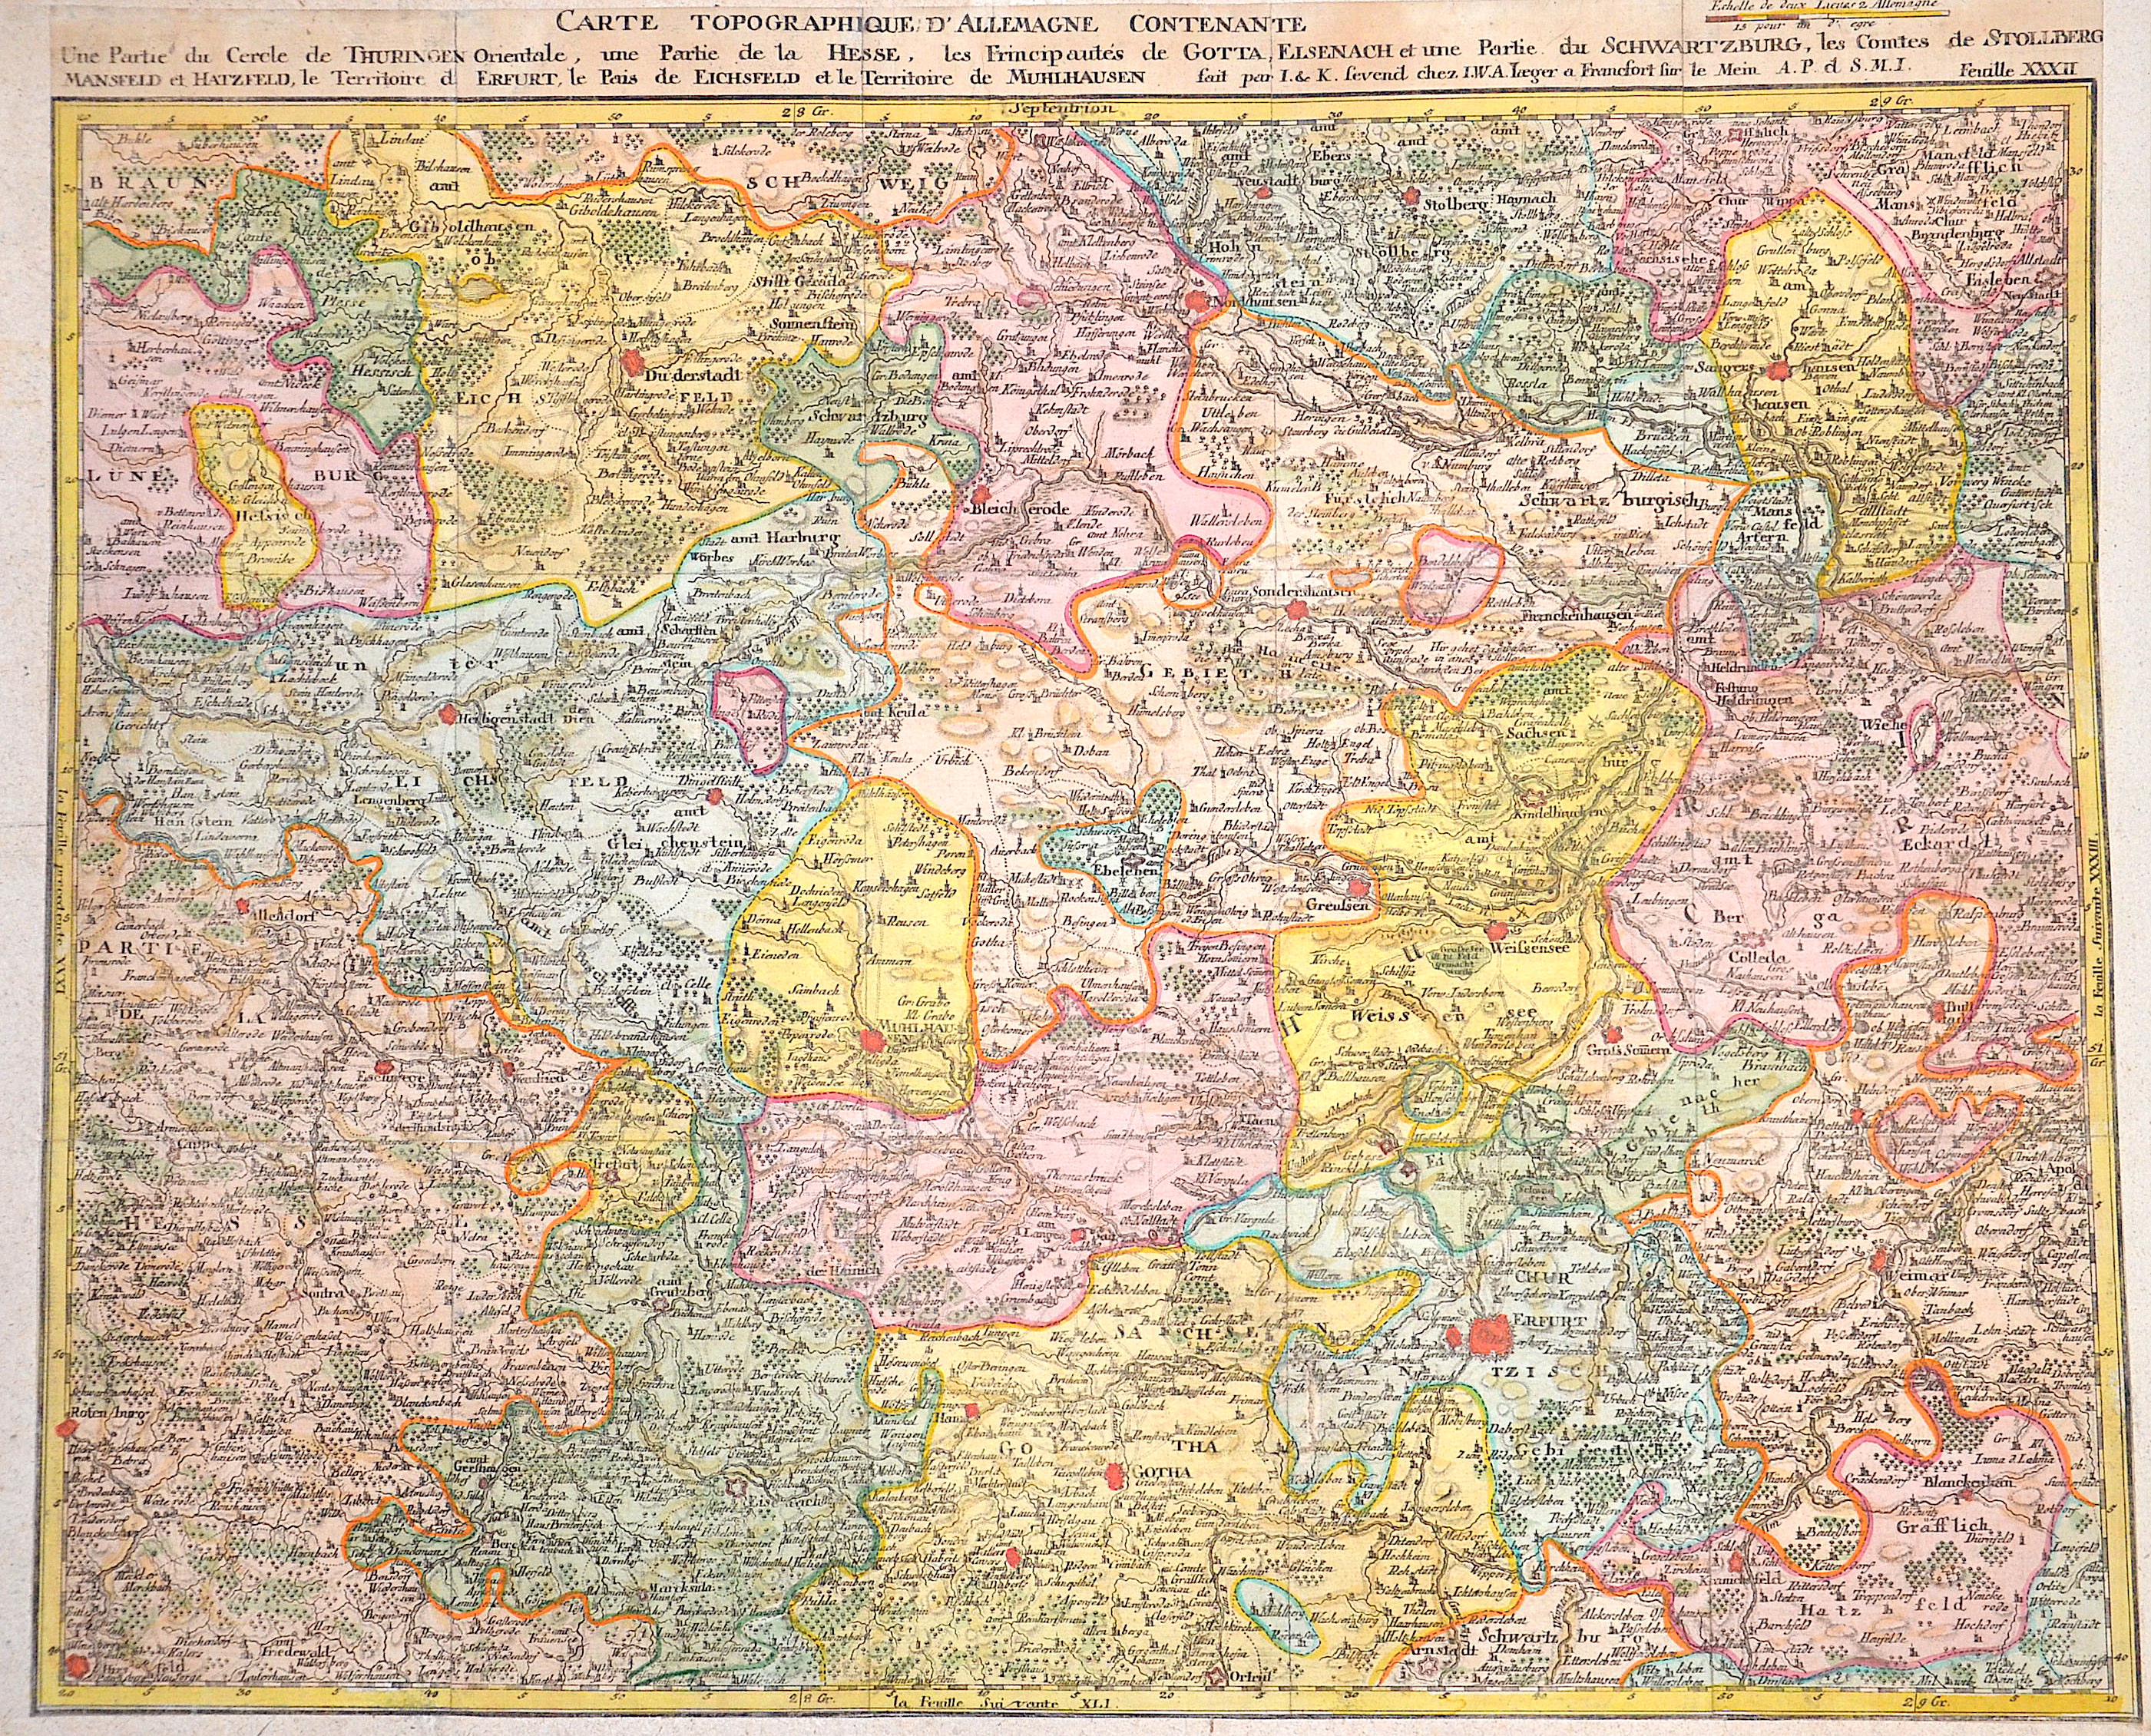 Jaeger Johann Wilhelm Abraham Carte Topographique D’Allemagne Contenante une Partie du Cercle de Thuringen Orientale, les Principautés de Gotta, Elsenach und Partie du Schwarzburg